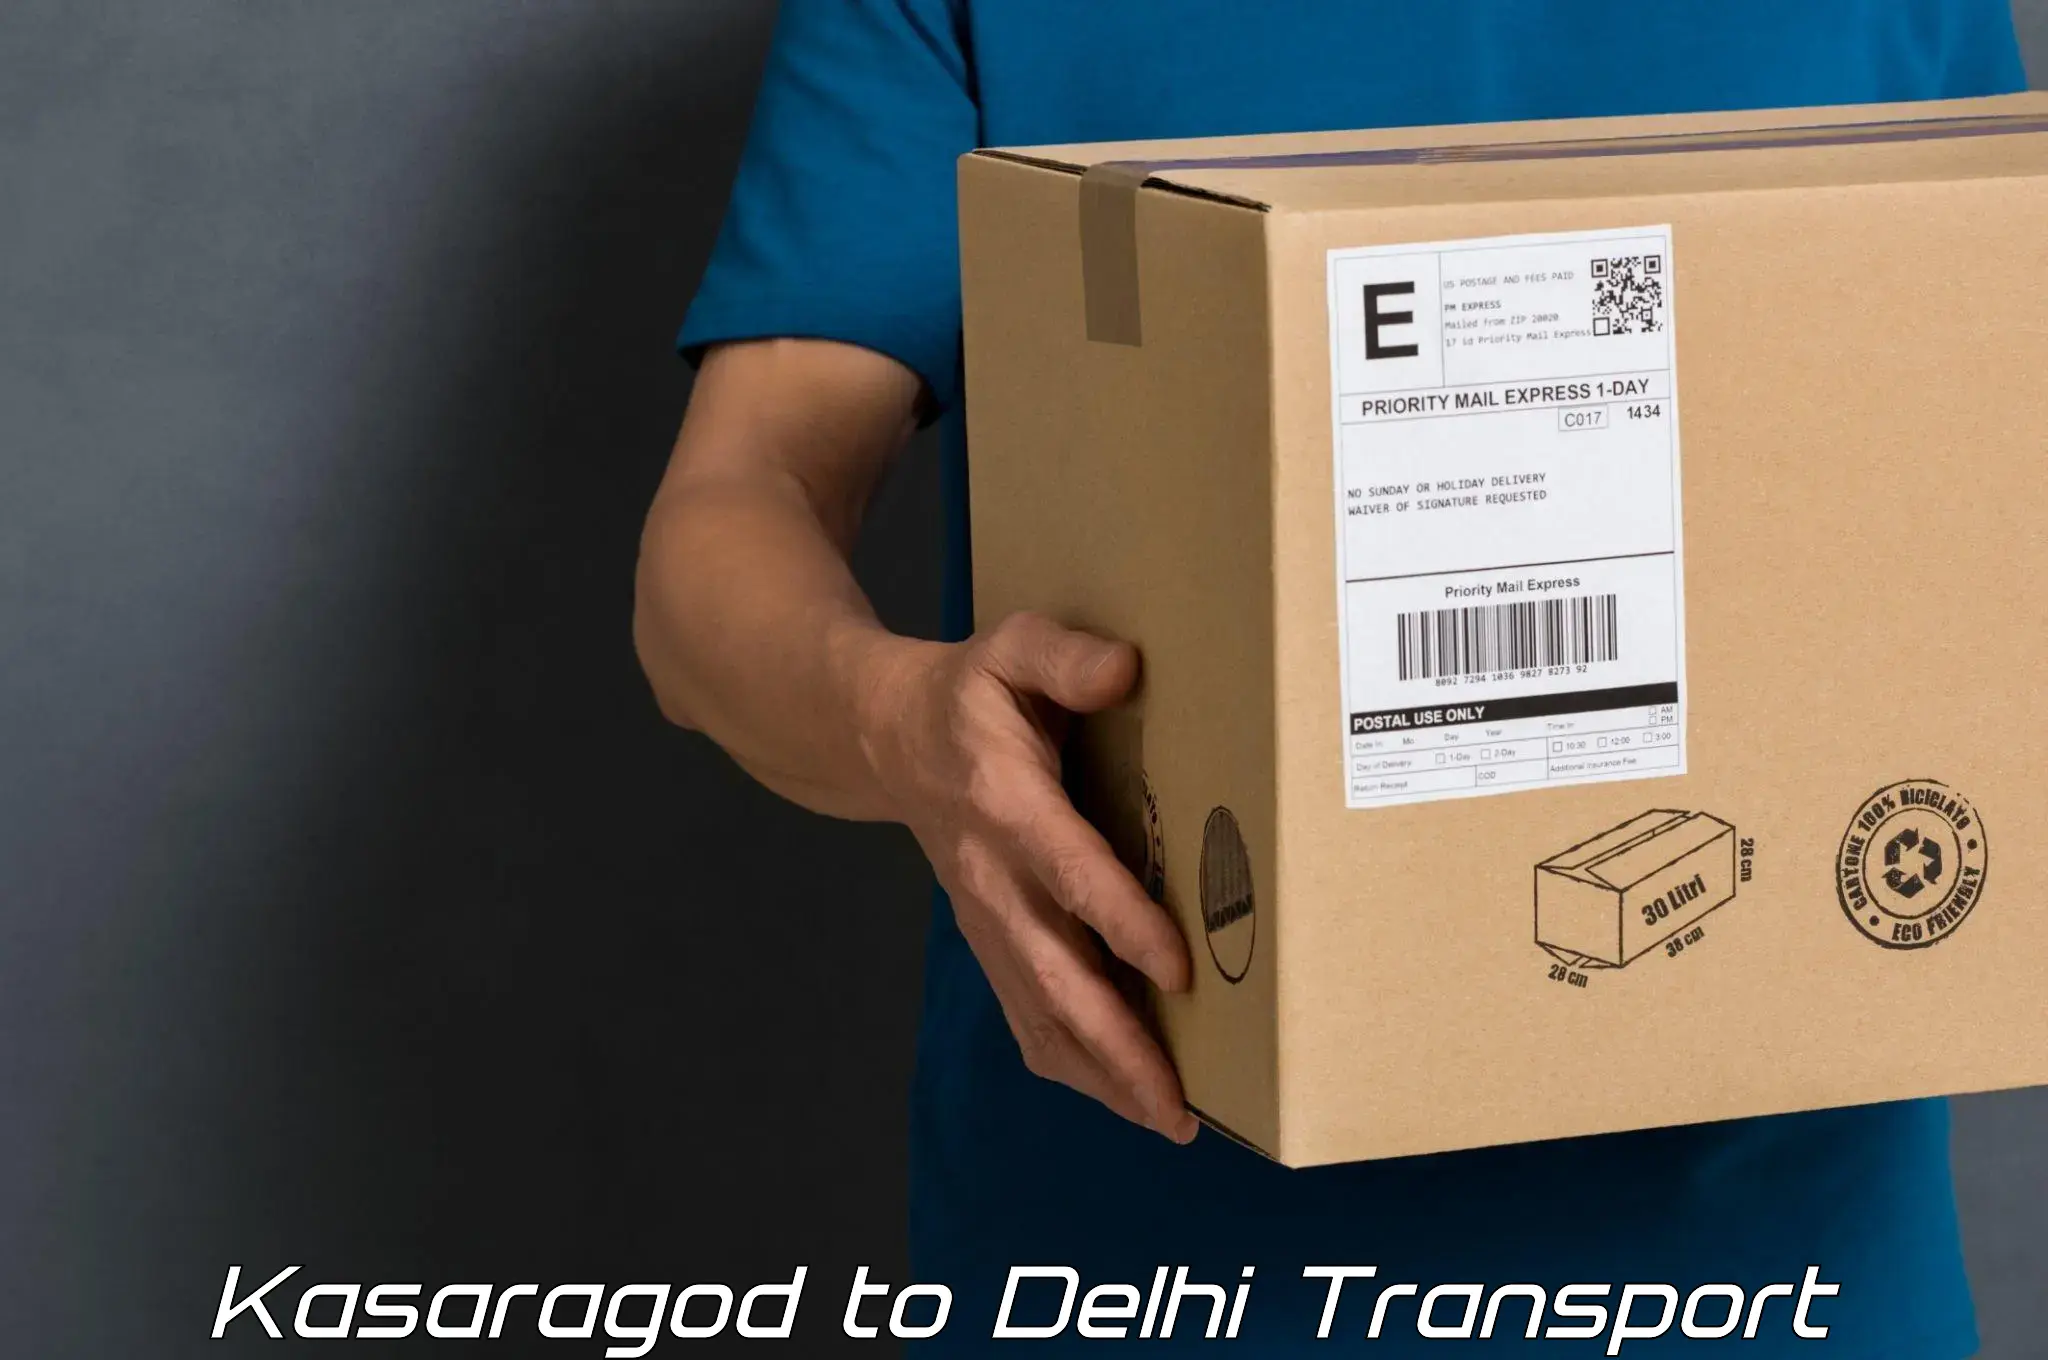 Furniture transport service Kasaragod to University of Delhi